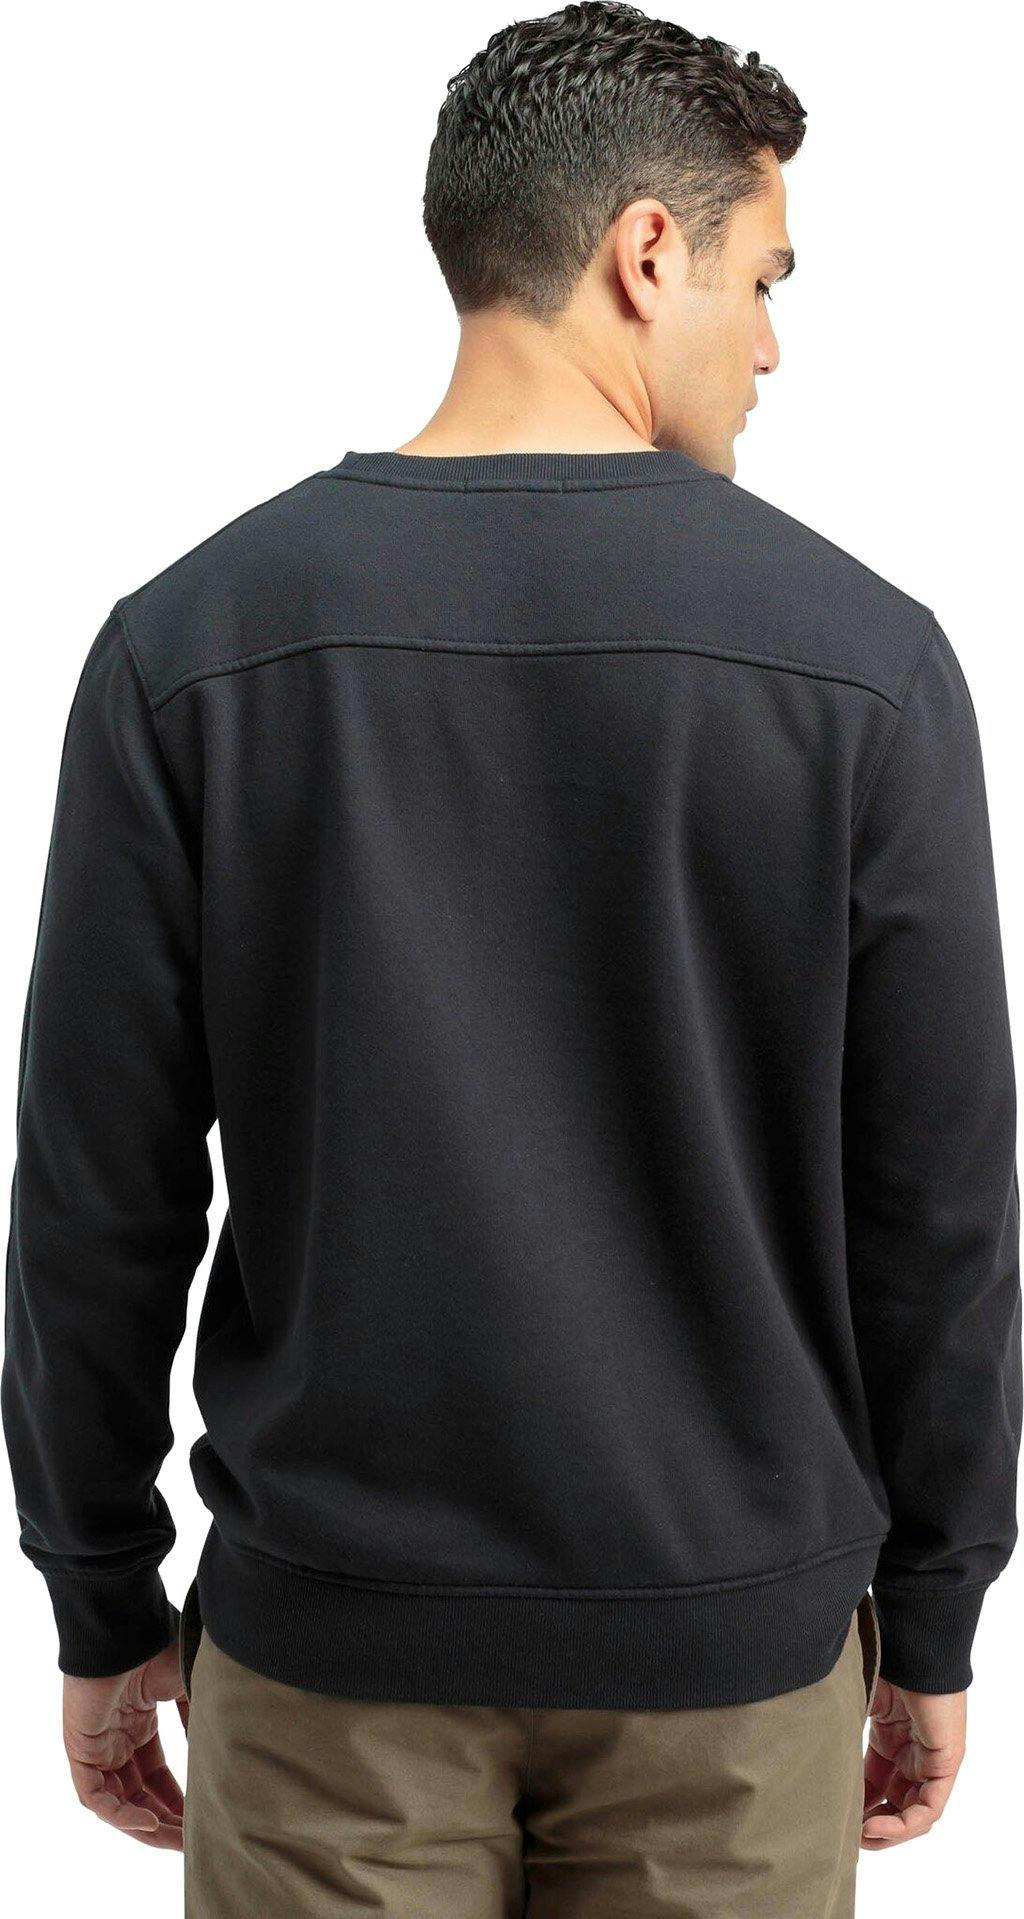 Product gallery image number 6 for product Fleece Sweatshirt - Men's